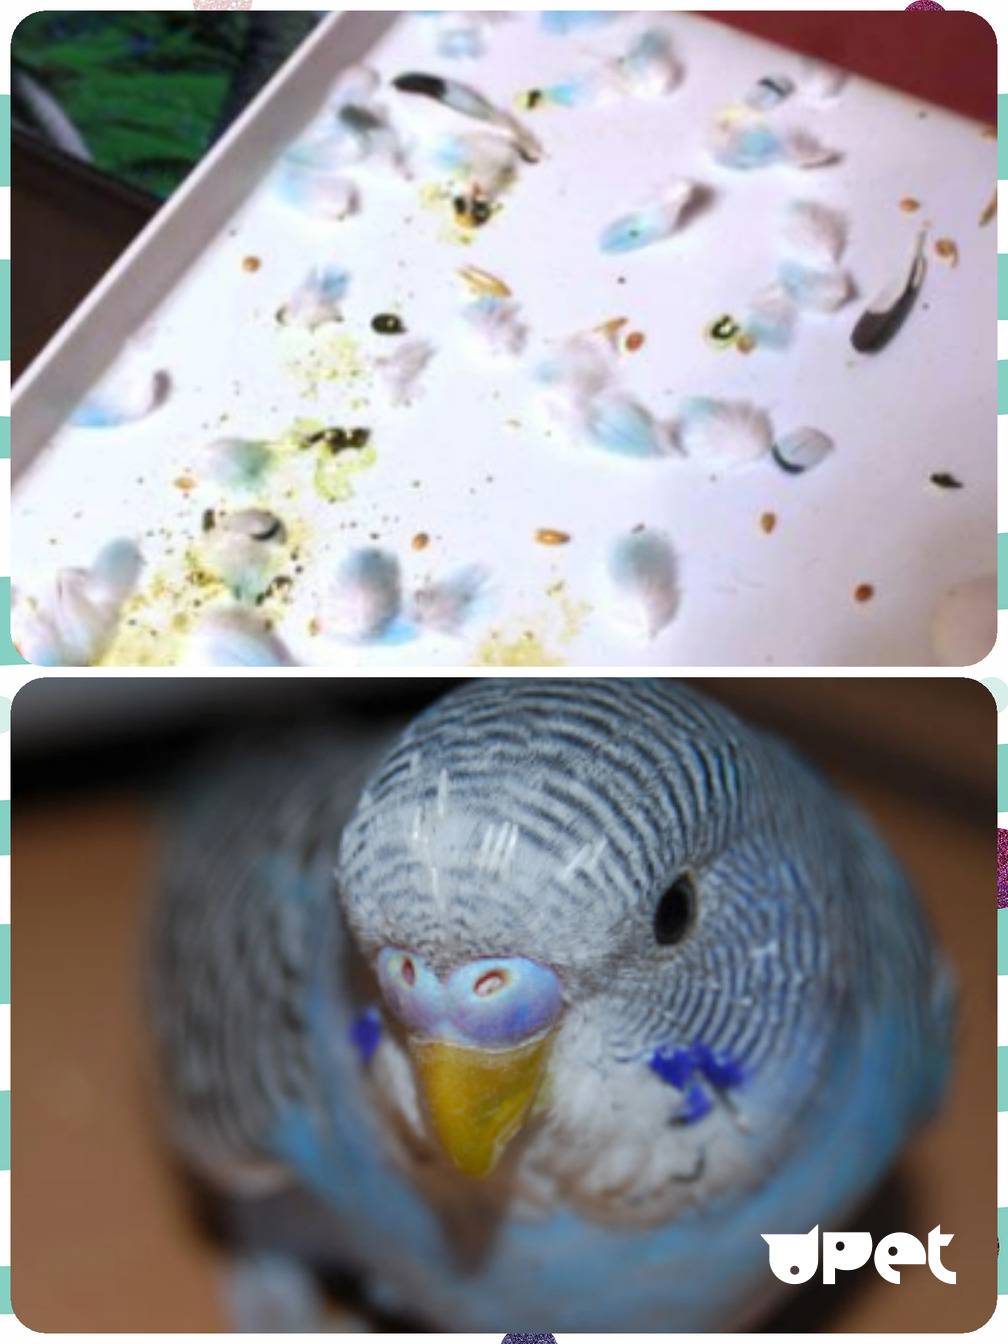 Линька у волнистых попугаев: почему бывает, сколько длится и что делать